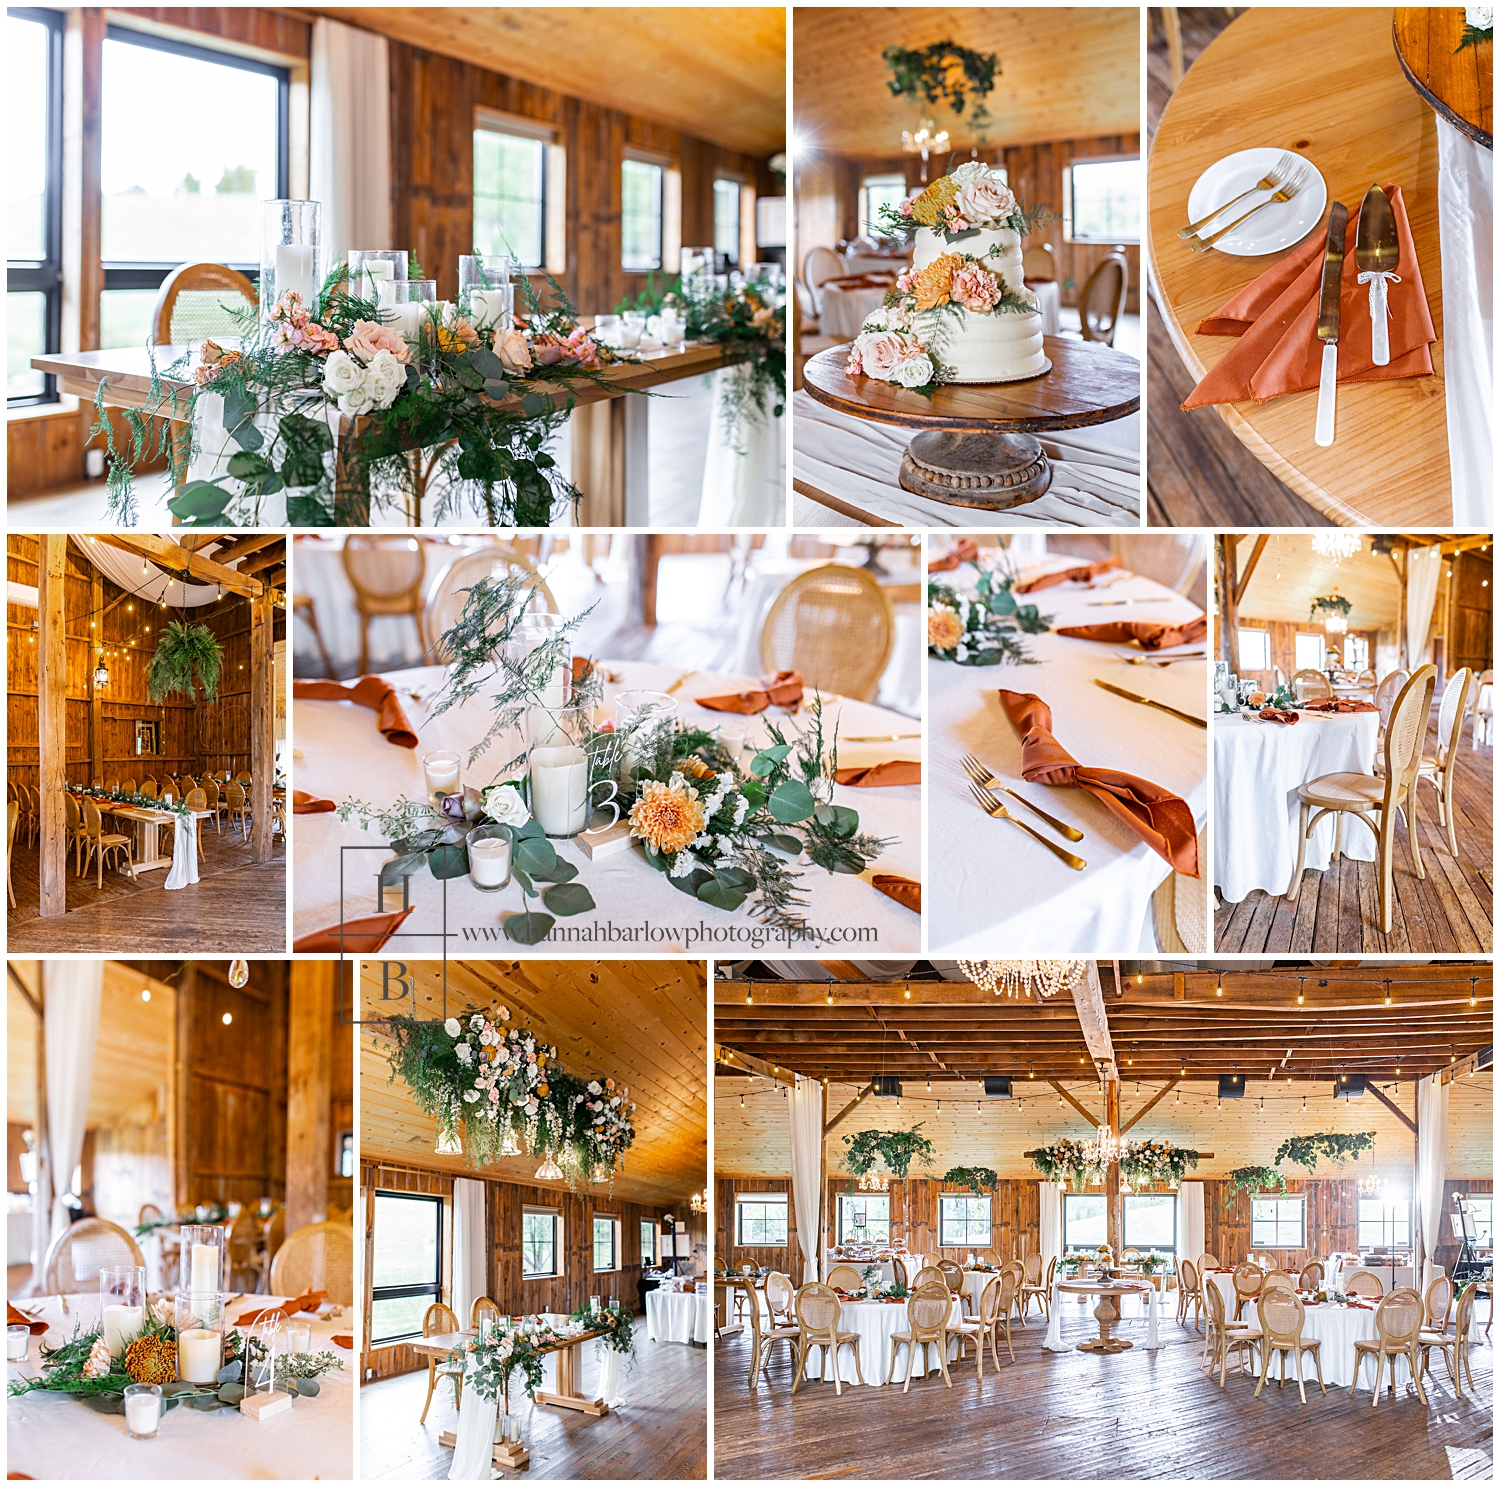 Interior wedding reception details in barn at Shady Elms Farm.